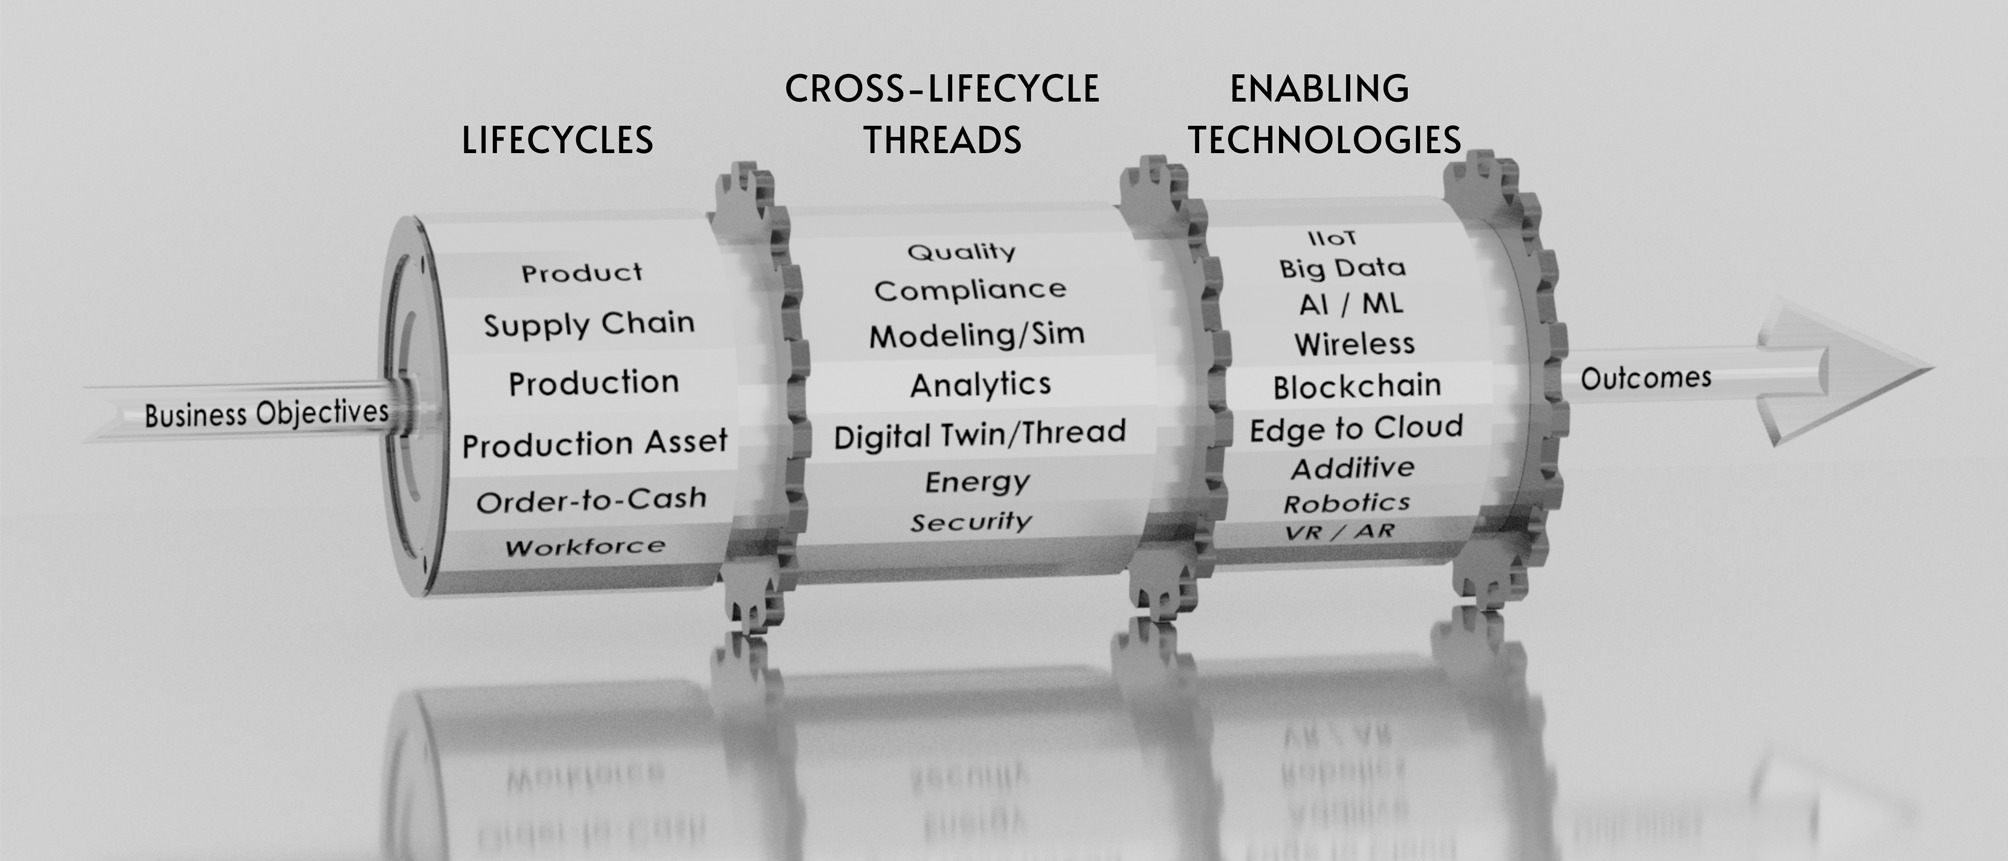 Im Mesa-Modell lassen sich einer oder mehrere Lebenszyklen mit einem lebenszyklusübergreifenden Thread sowie Hilfstechnologien verbinden, um spezifische Geschäftsergebnisse gezielt anzustreben. (Bild: ATS Gesellschaft für angewandte technische Systeme mbH)